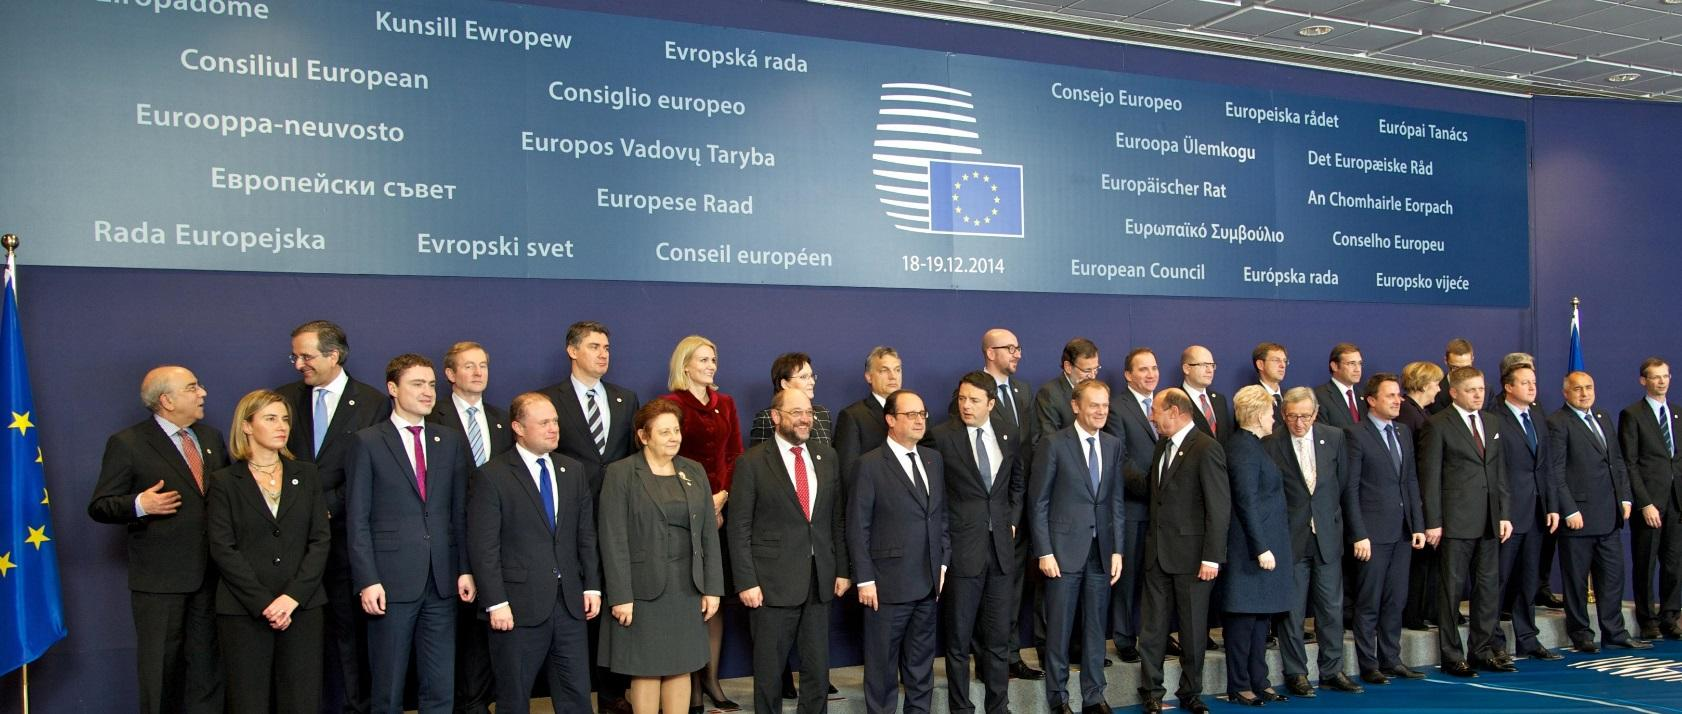 Il vertice del Consiglio europeo Vertice dei capi di Stato e di governo di tutti i paesi UE Si tiene